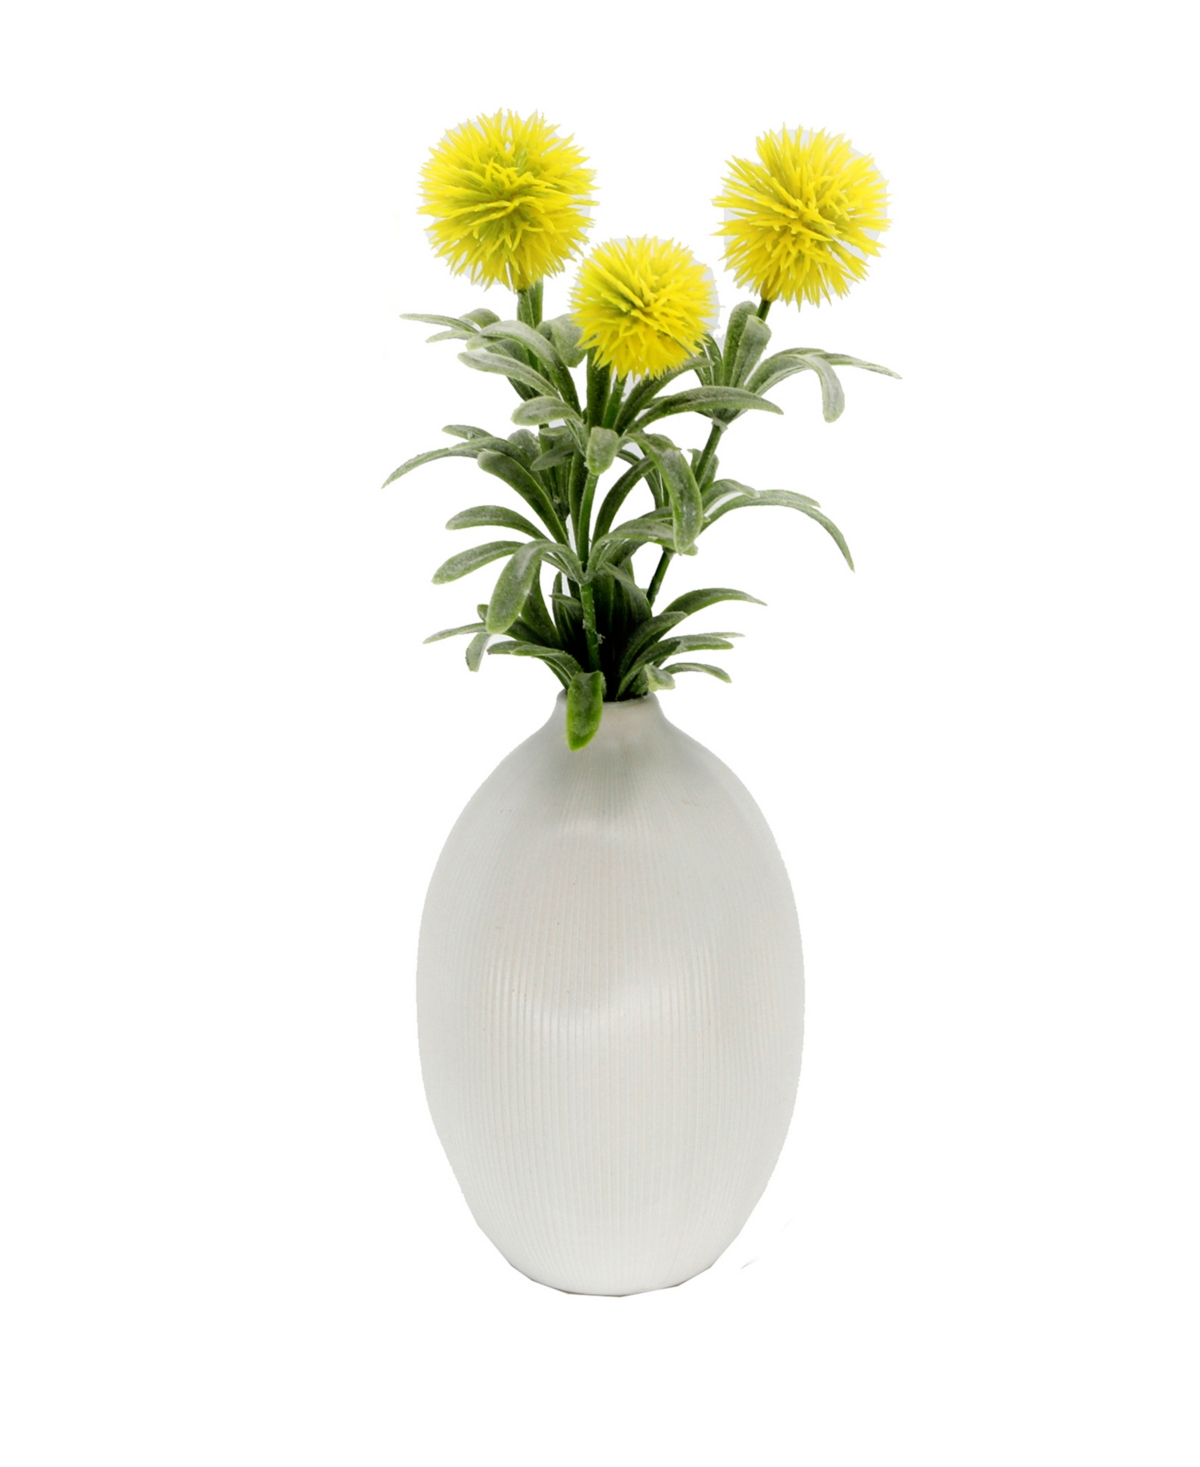 11" Artificial Pom Pom in Ceramic Vase - Yellow, White